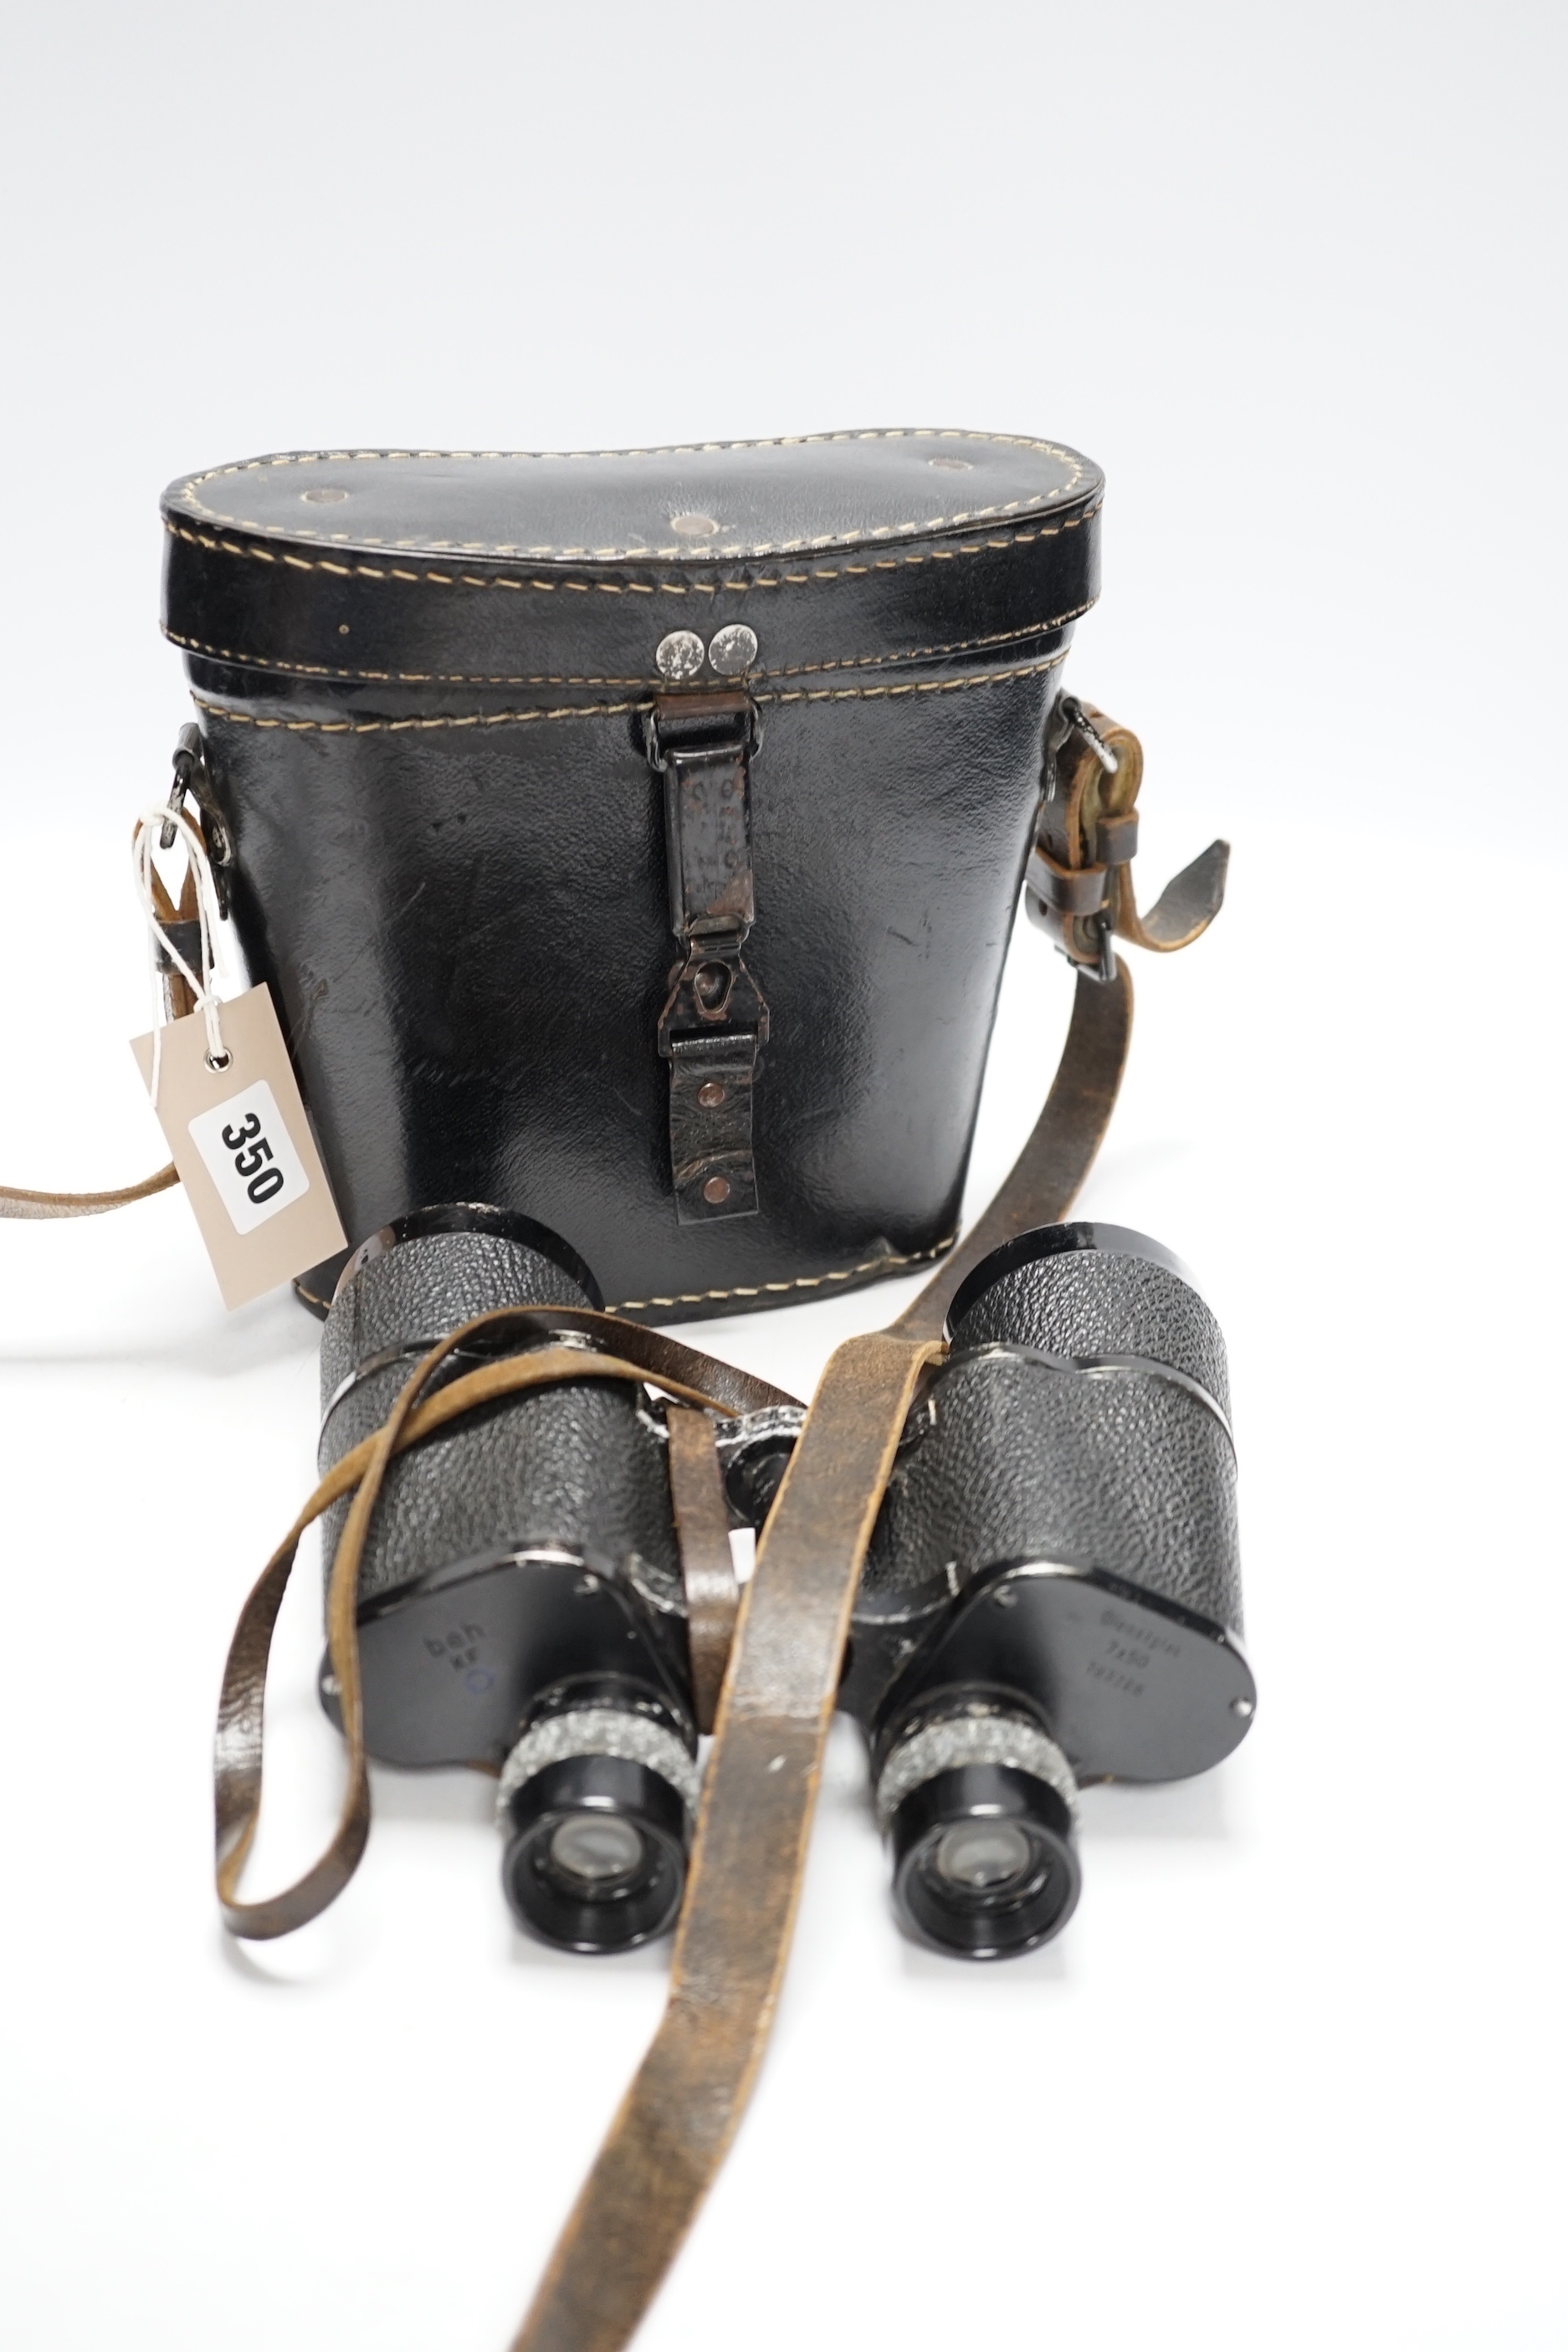 E. Leitz beh Dienstglas field binoculars, 7 x 50, World War II period in original case